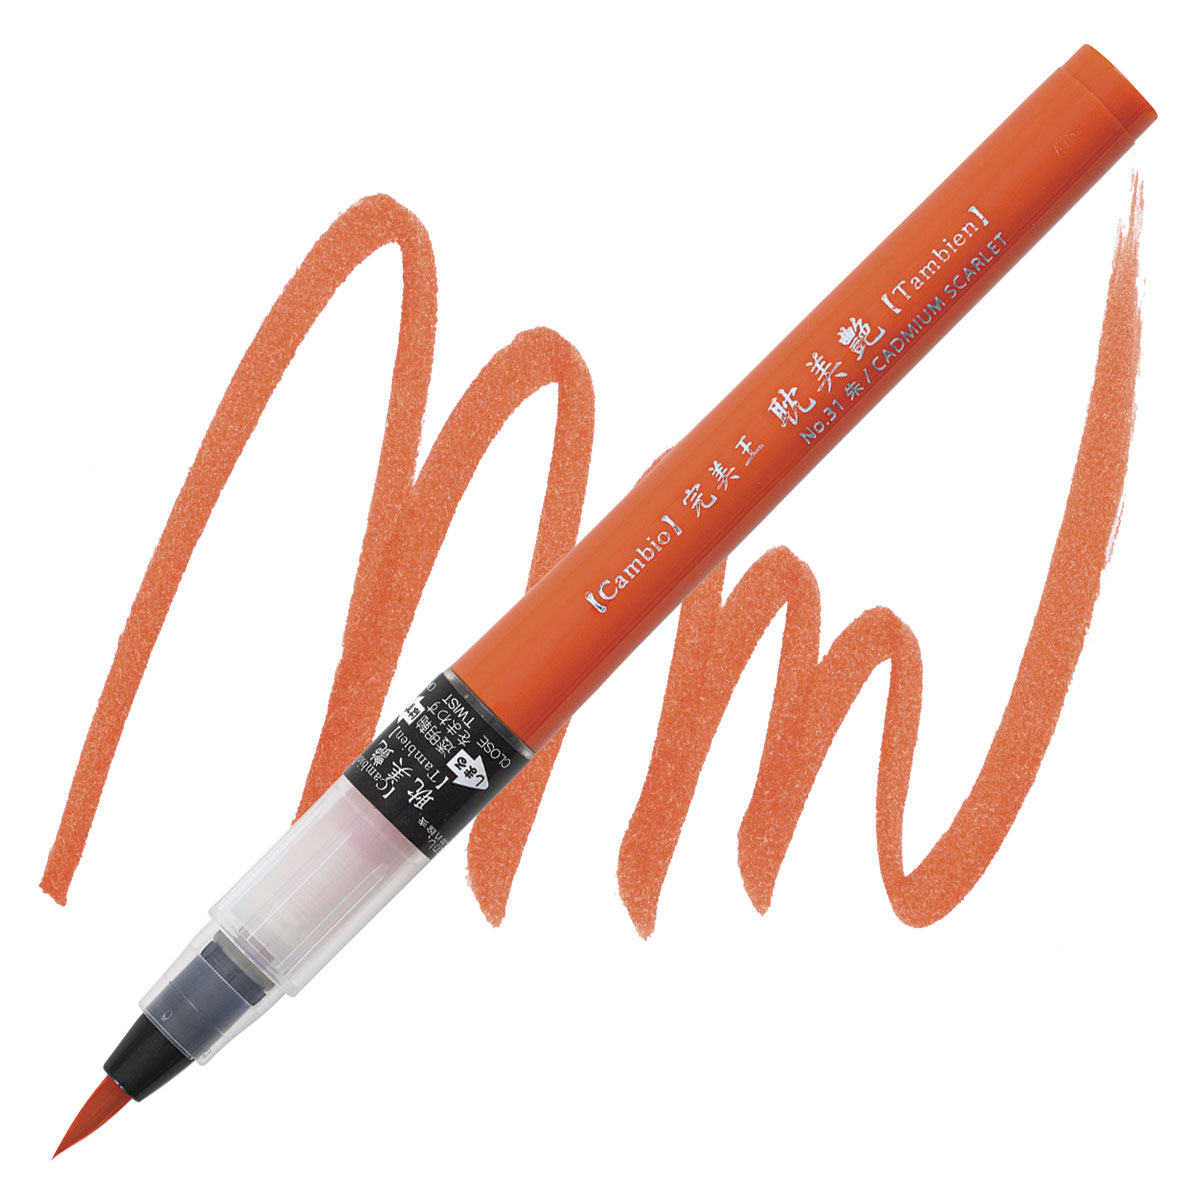 Kuretake-ZIG Cambio Tambien Brush Pen — ArtSnacks